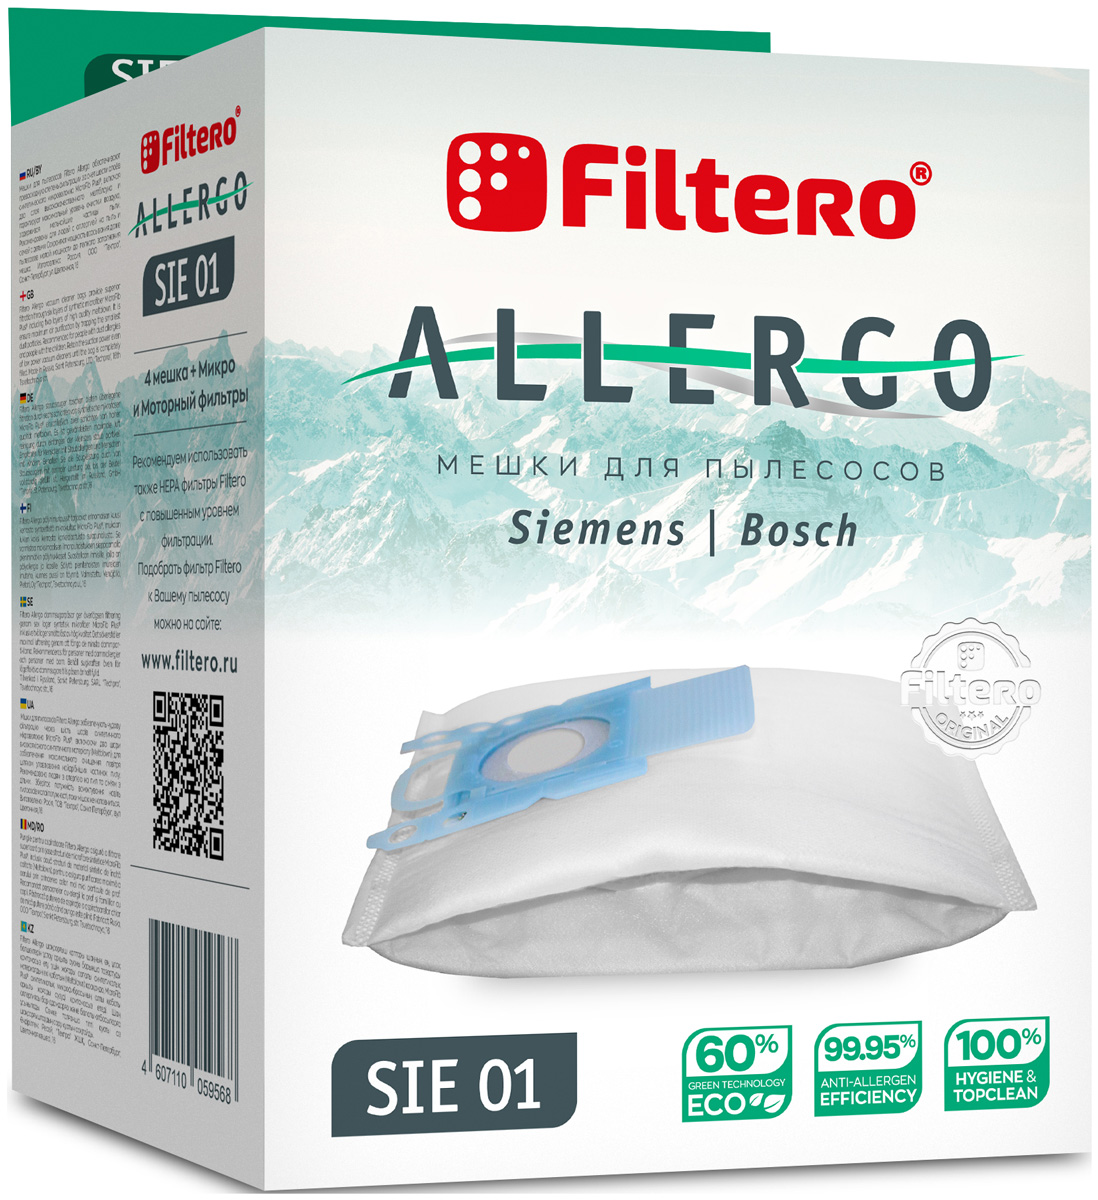 Пылесборники Filtero SIE 01 Allergo 4 шт. + моторный фильтр и микрофильтр пылесборники filtero mie 04 allergo 4шт моторный фильтр и микрофильтр